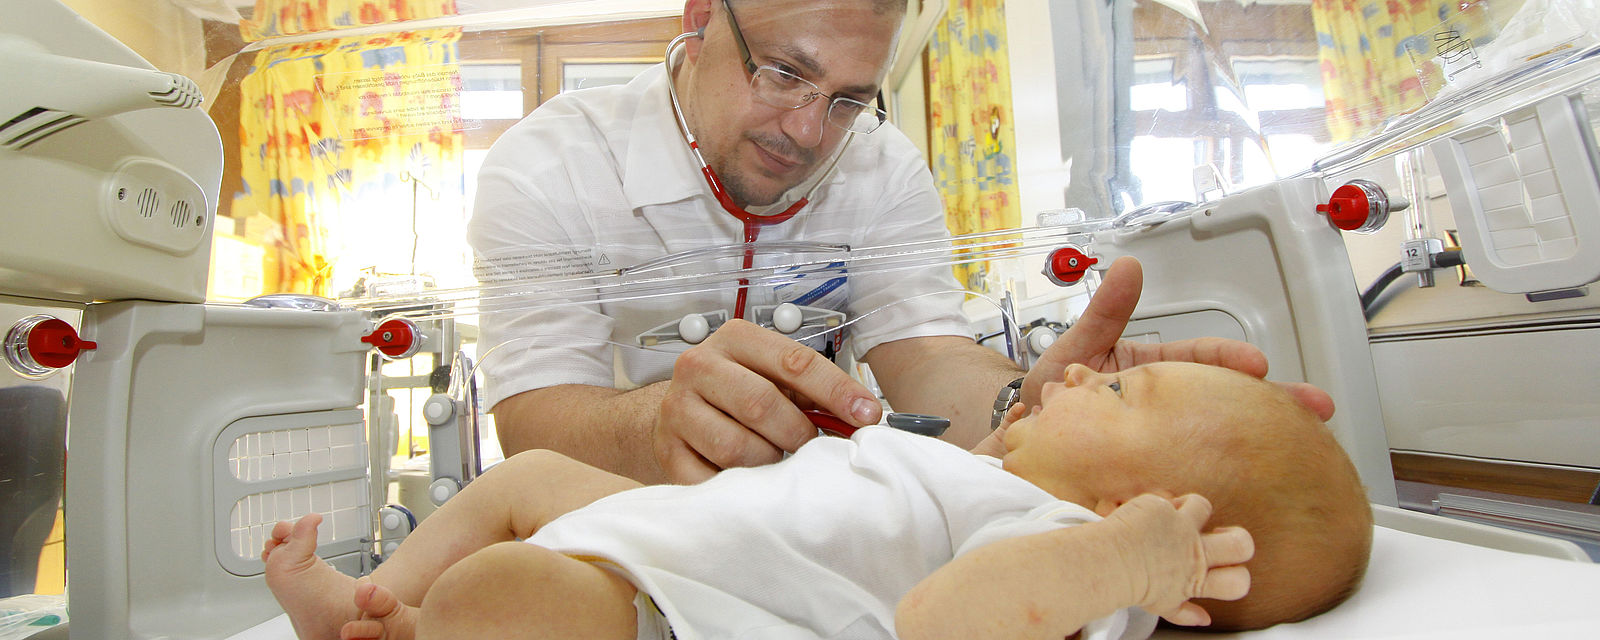 Kinderarzt untersucht Baby